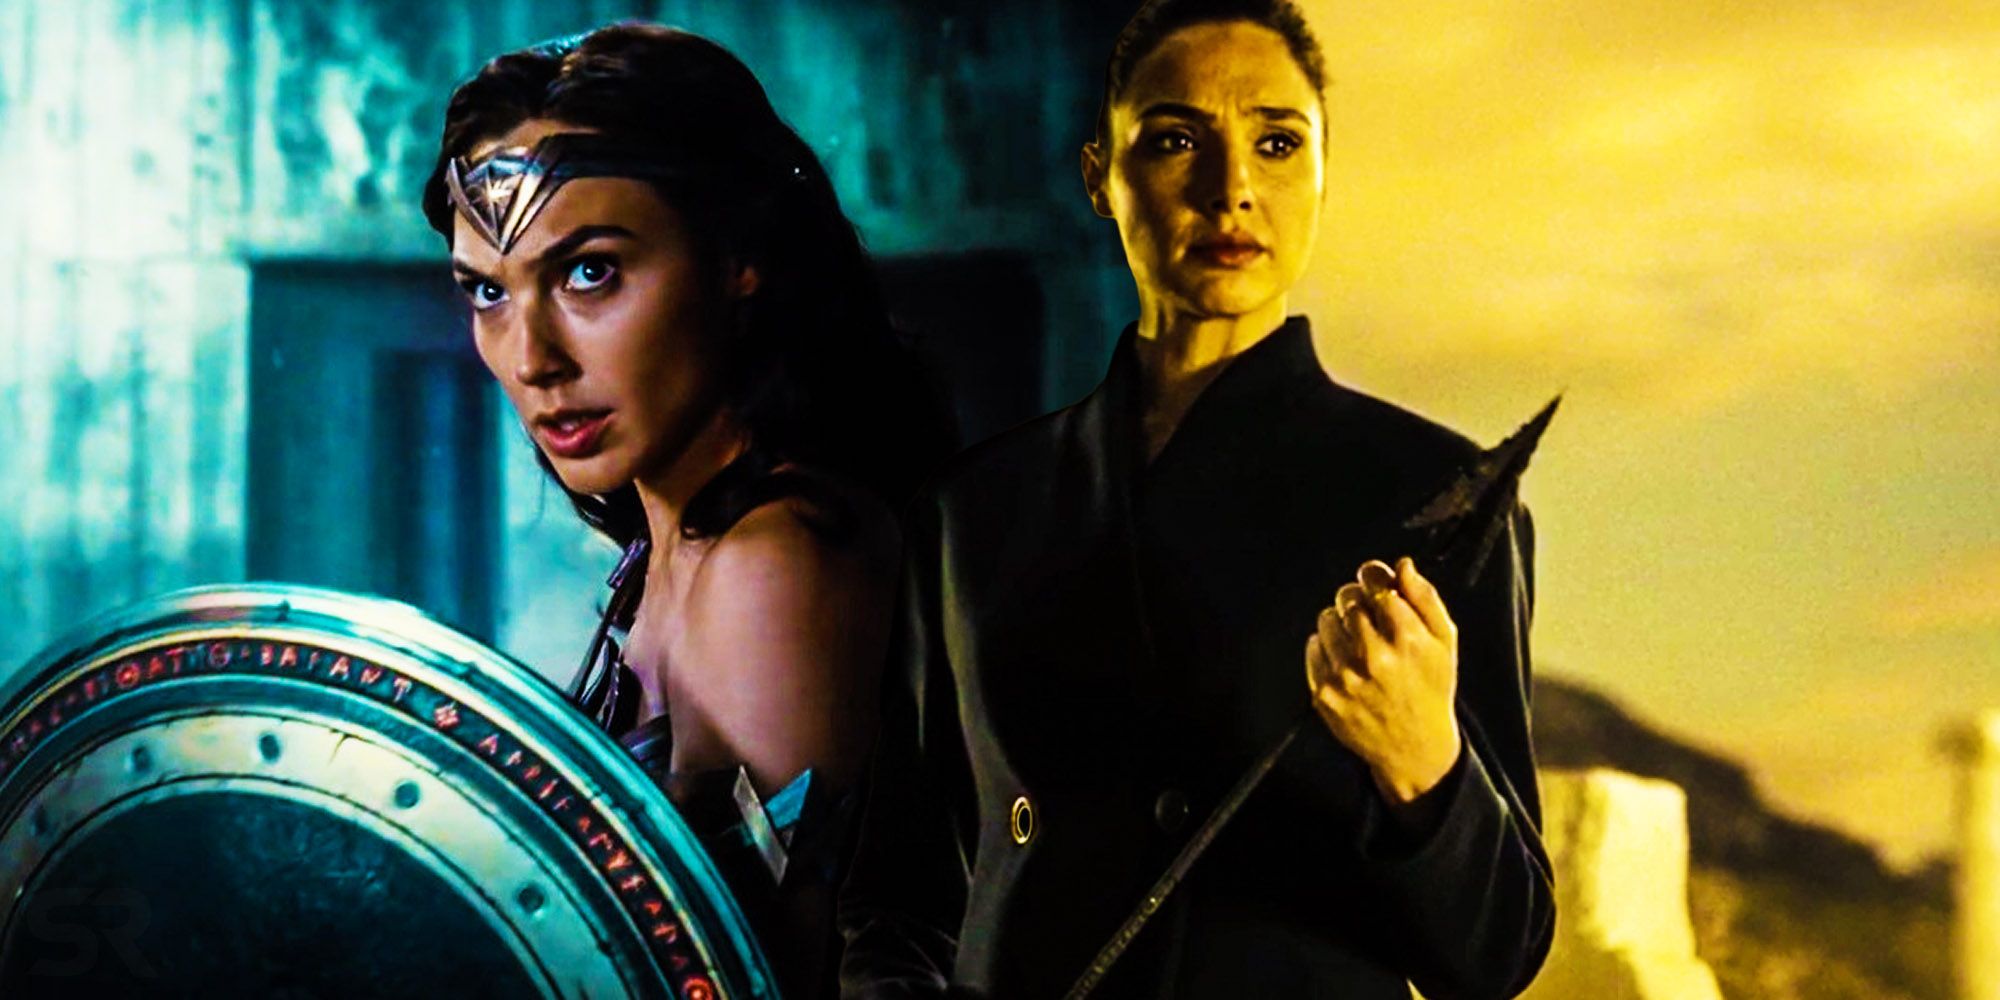 Wonder woman story ending Justice league snyder cut original plan